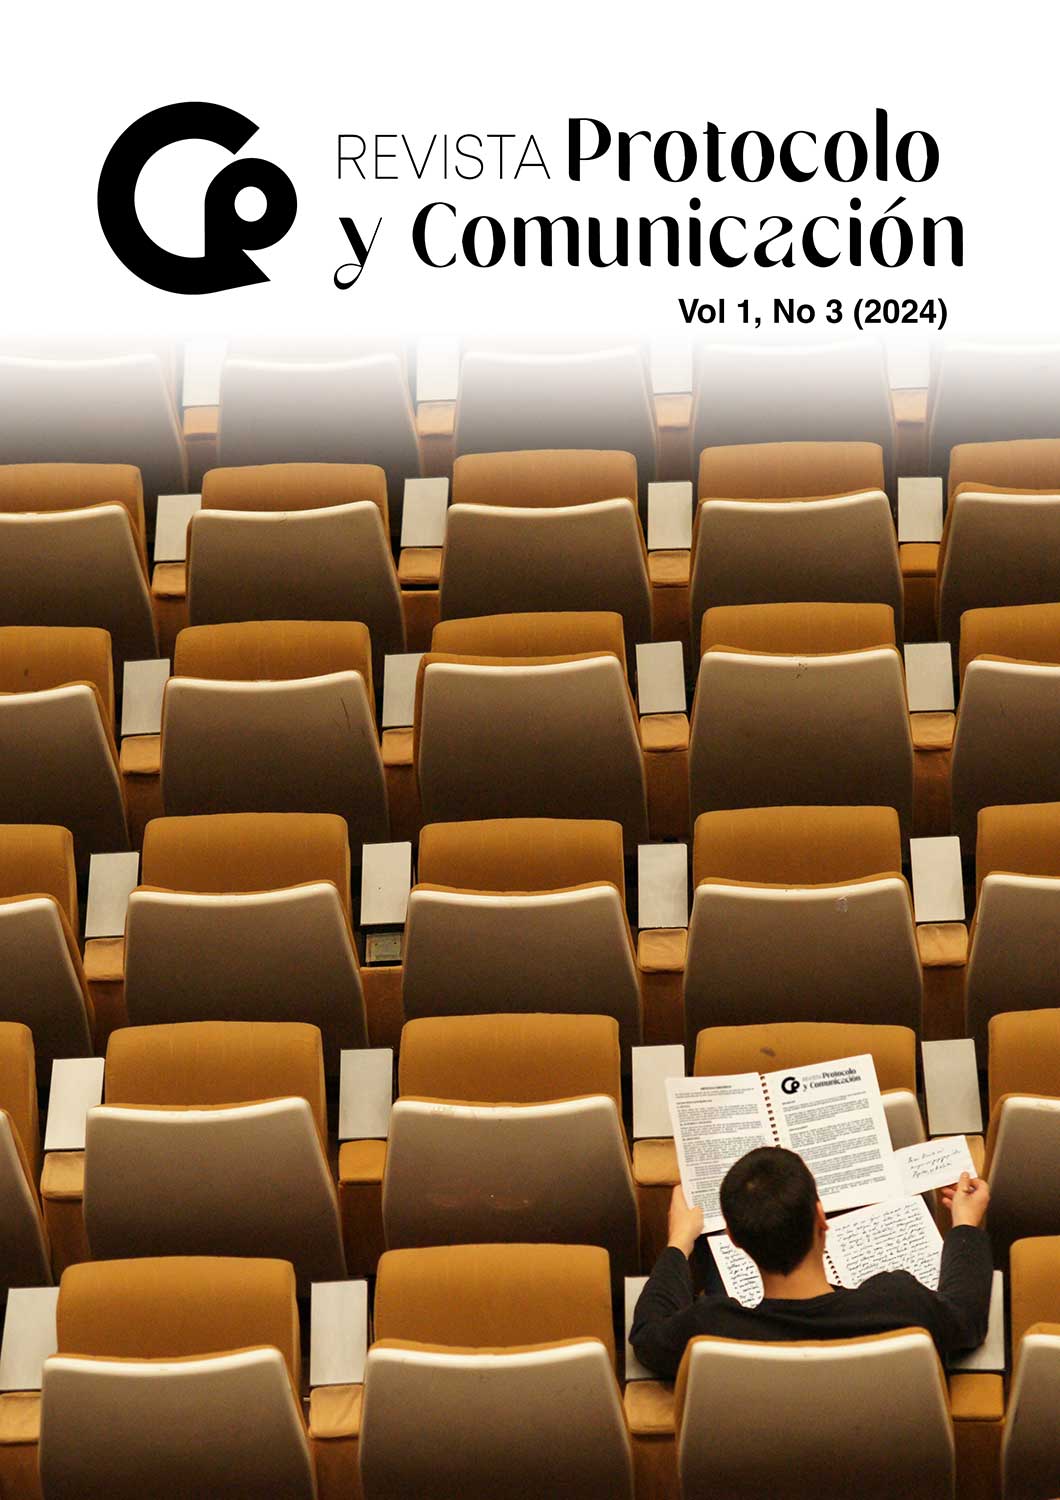 					Ver Vol. 1 Núm. 3 (2024): Revista Protocolo y Comunicación
				